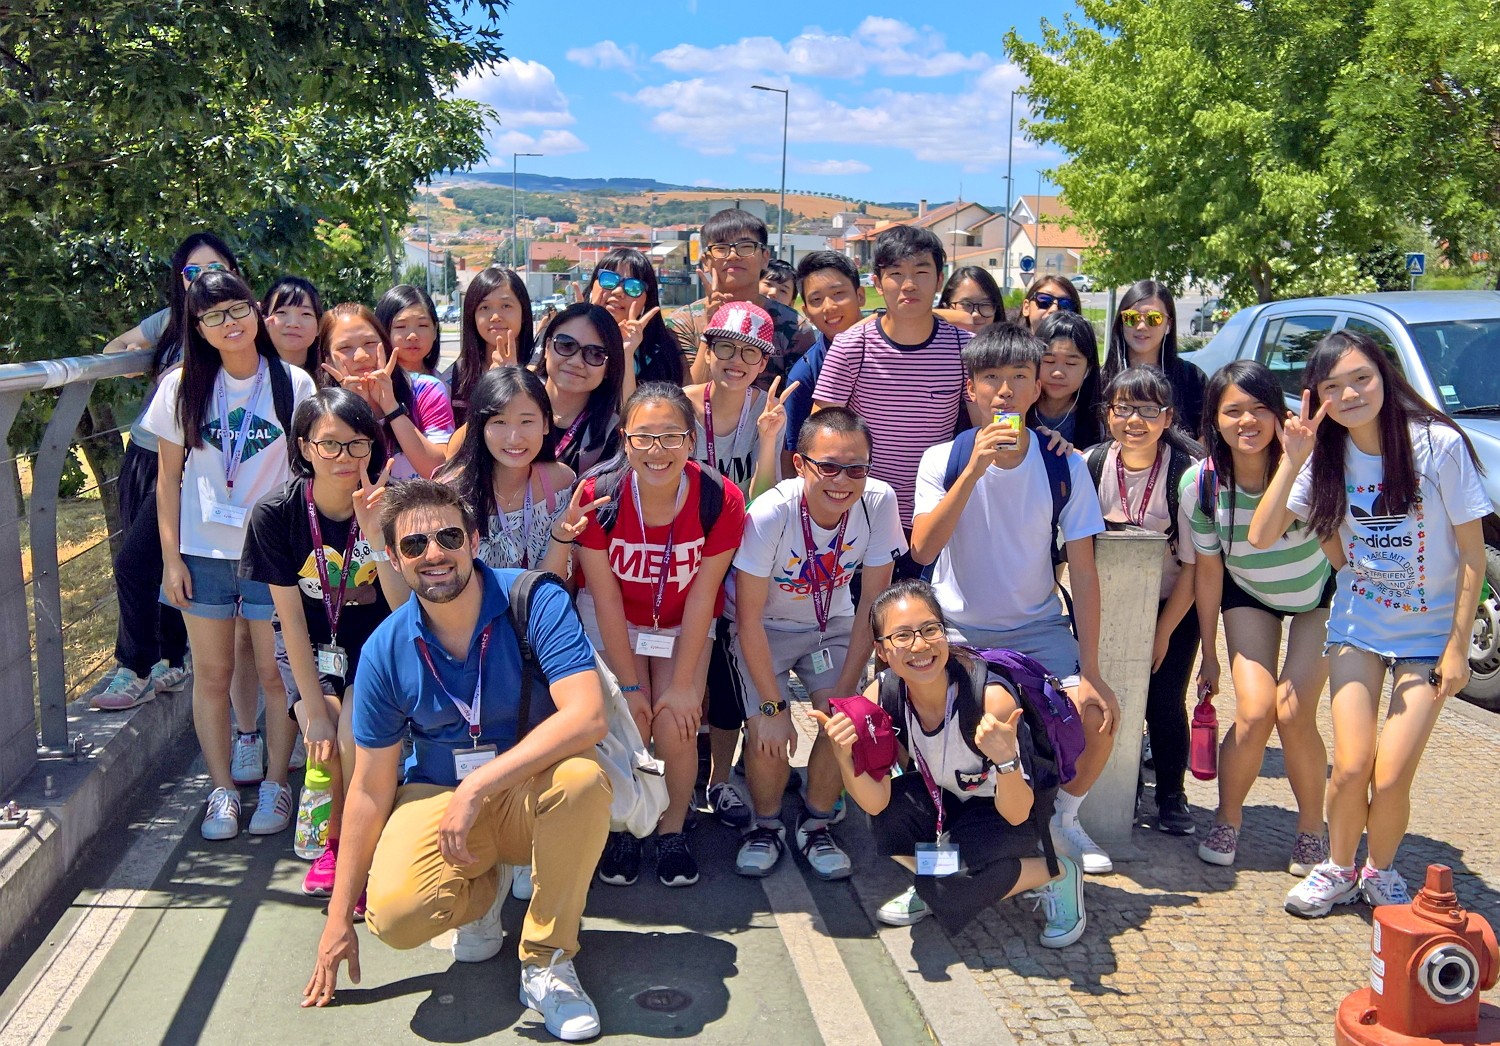 Jovens de Macau aprendem português nas férias de verão no IPB